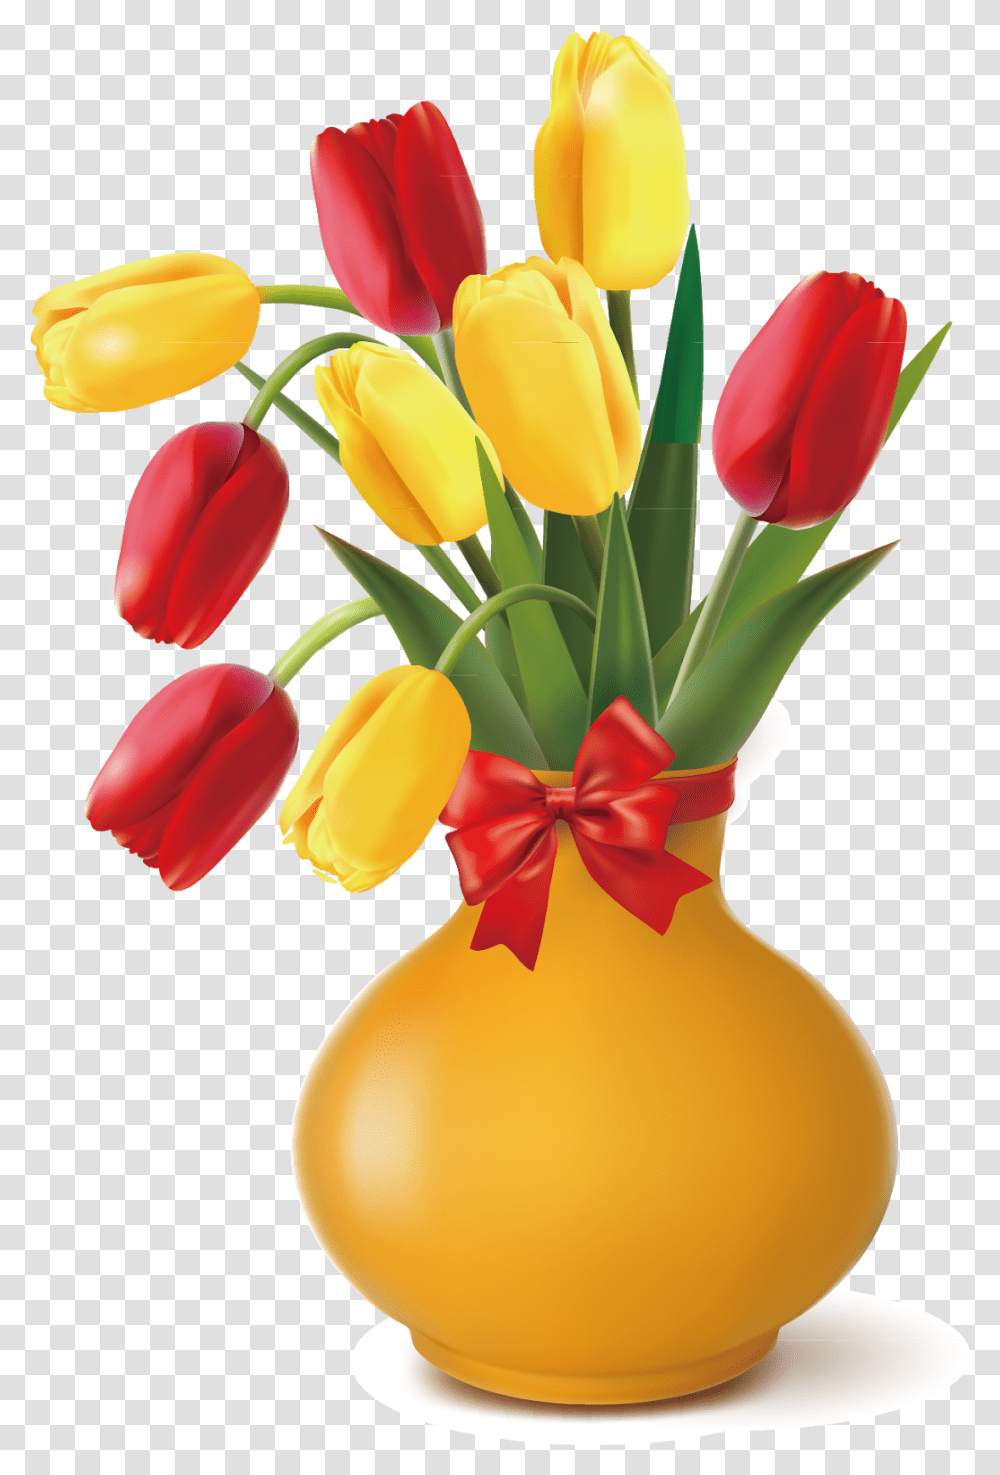 Red Tulip Tulip Flower Bouquet Clip Art Flower Pot Vector Flower Vase, Plant, Blossom, Flower Arrangement, Petal Transparent Png